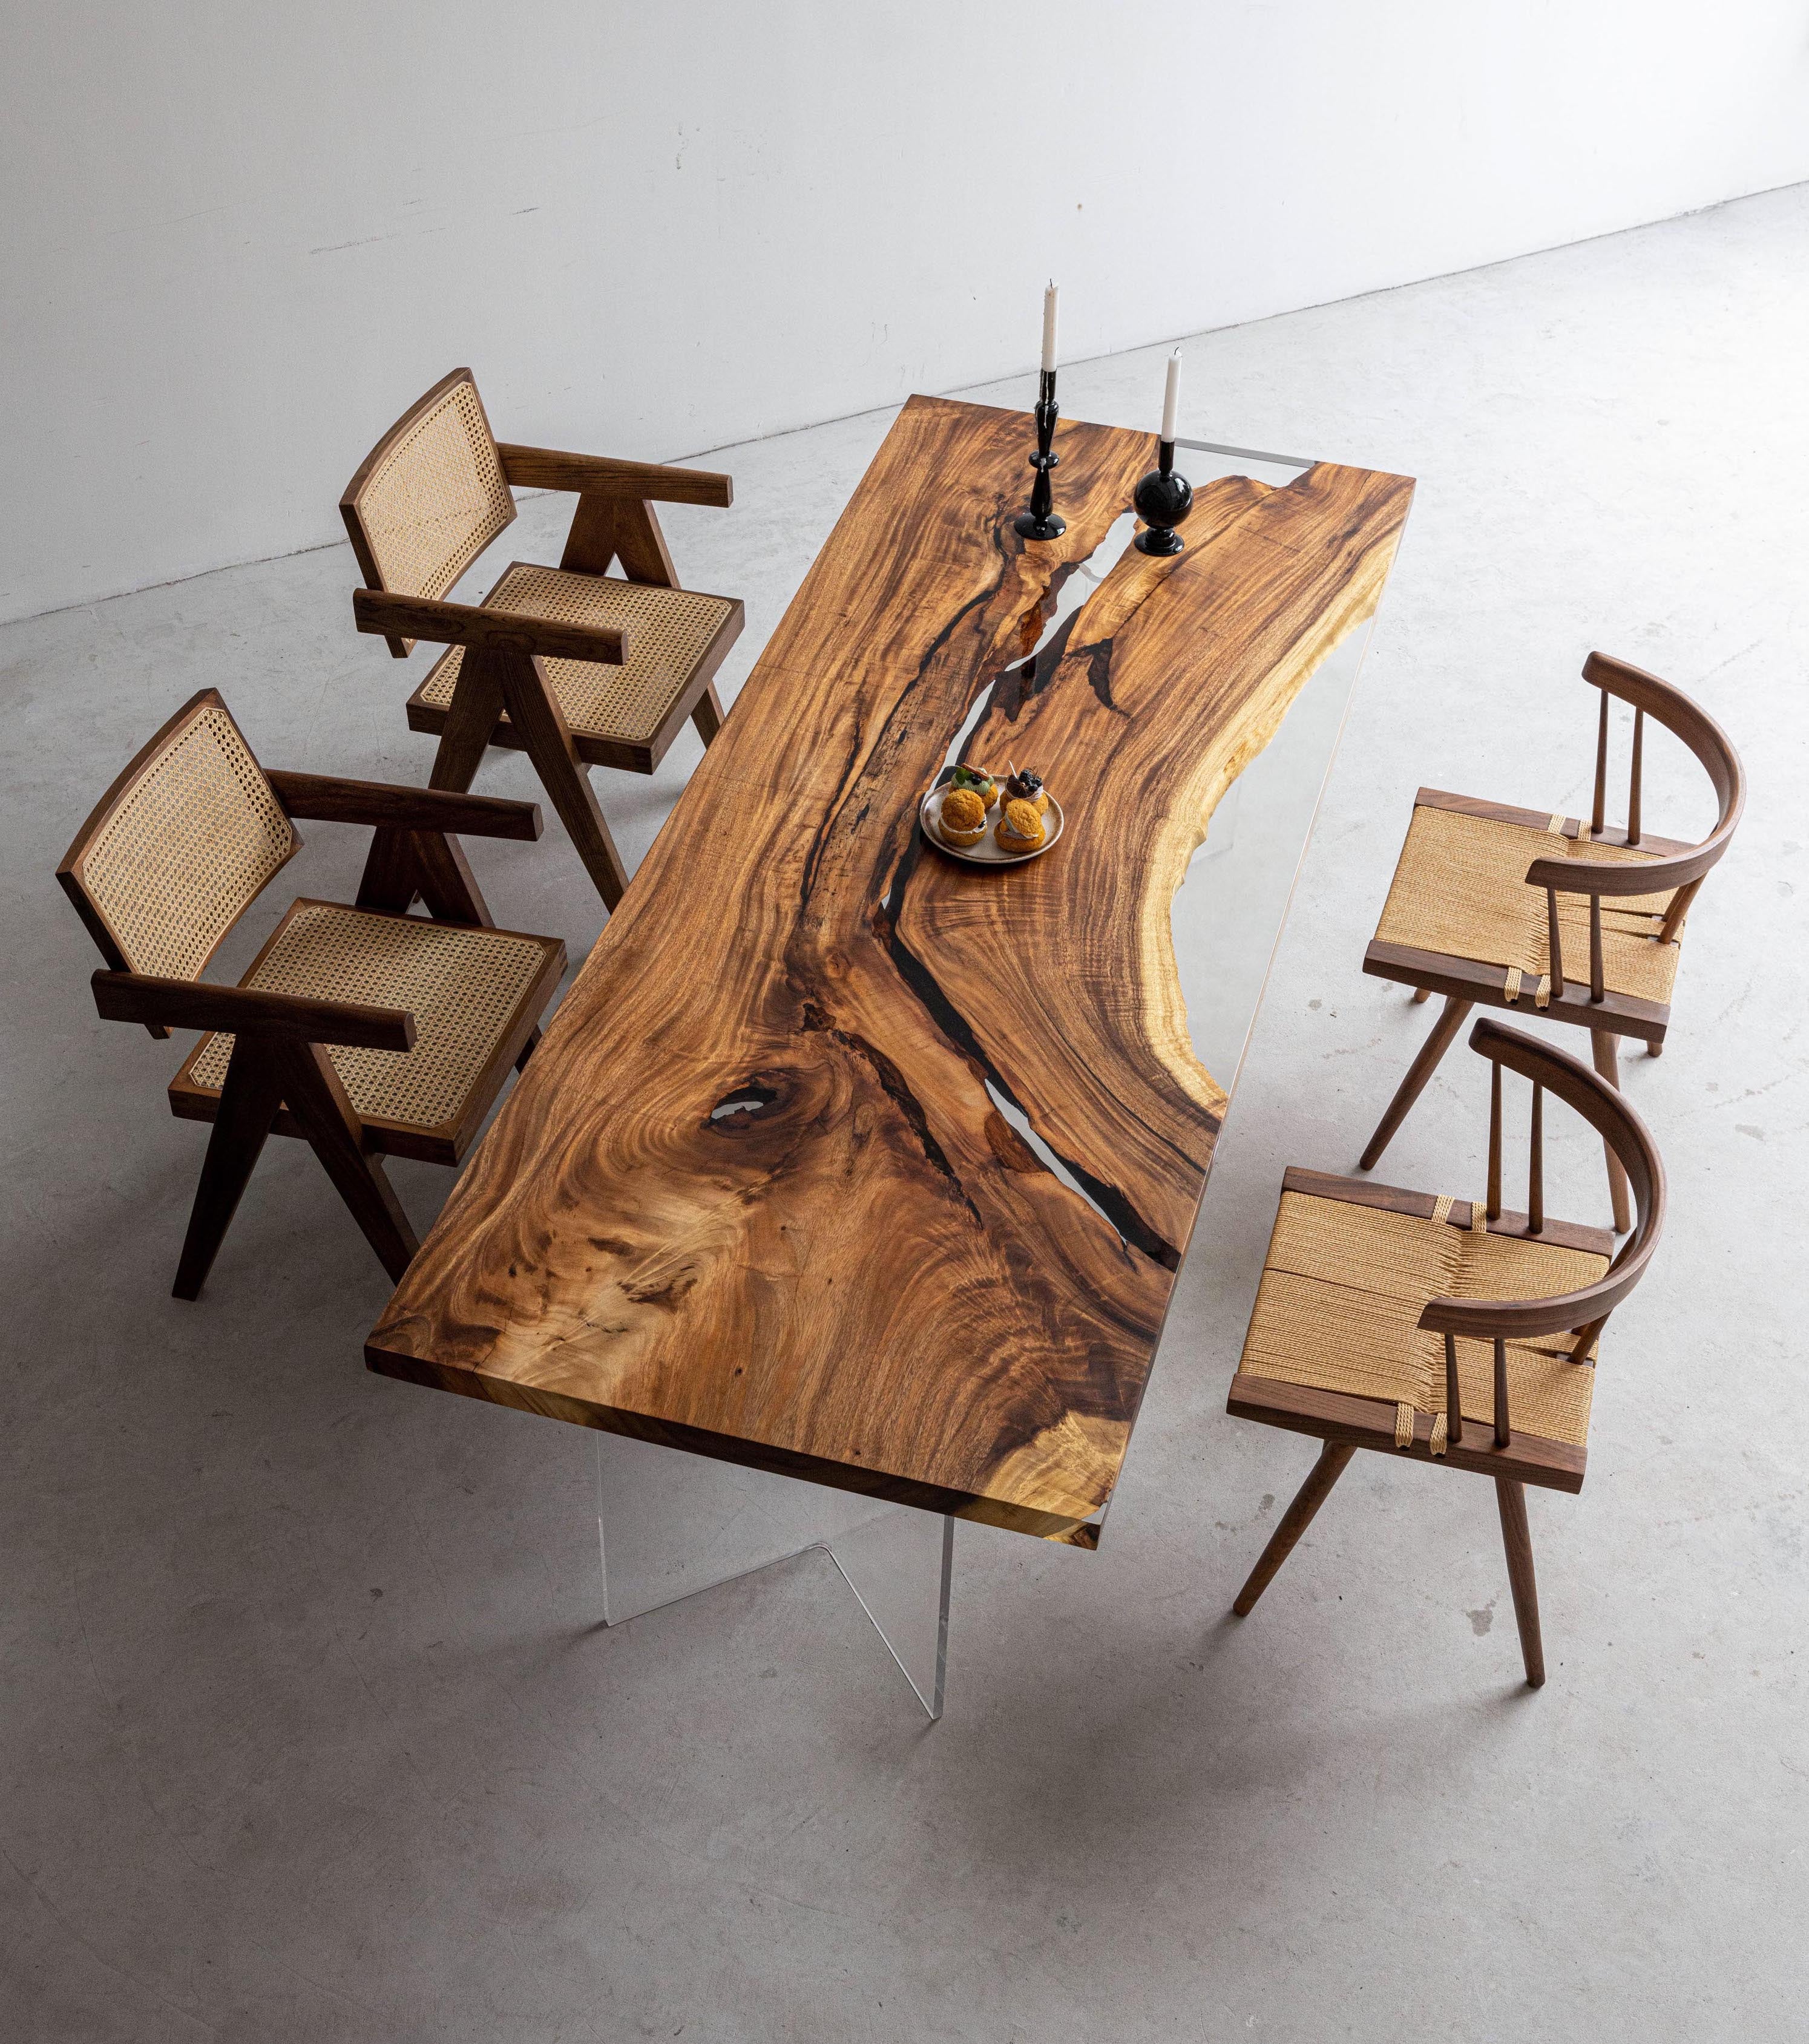 tavolo in legno in resina epossidica, tavolo river in resina epossidica, tavolino in resina epossidica